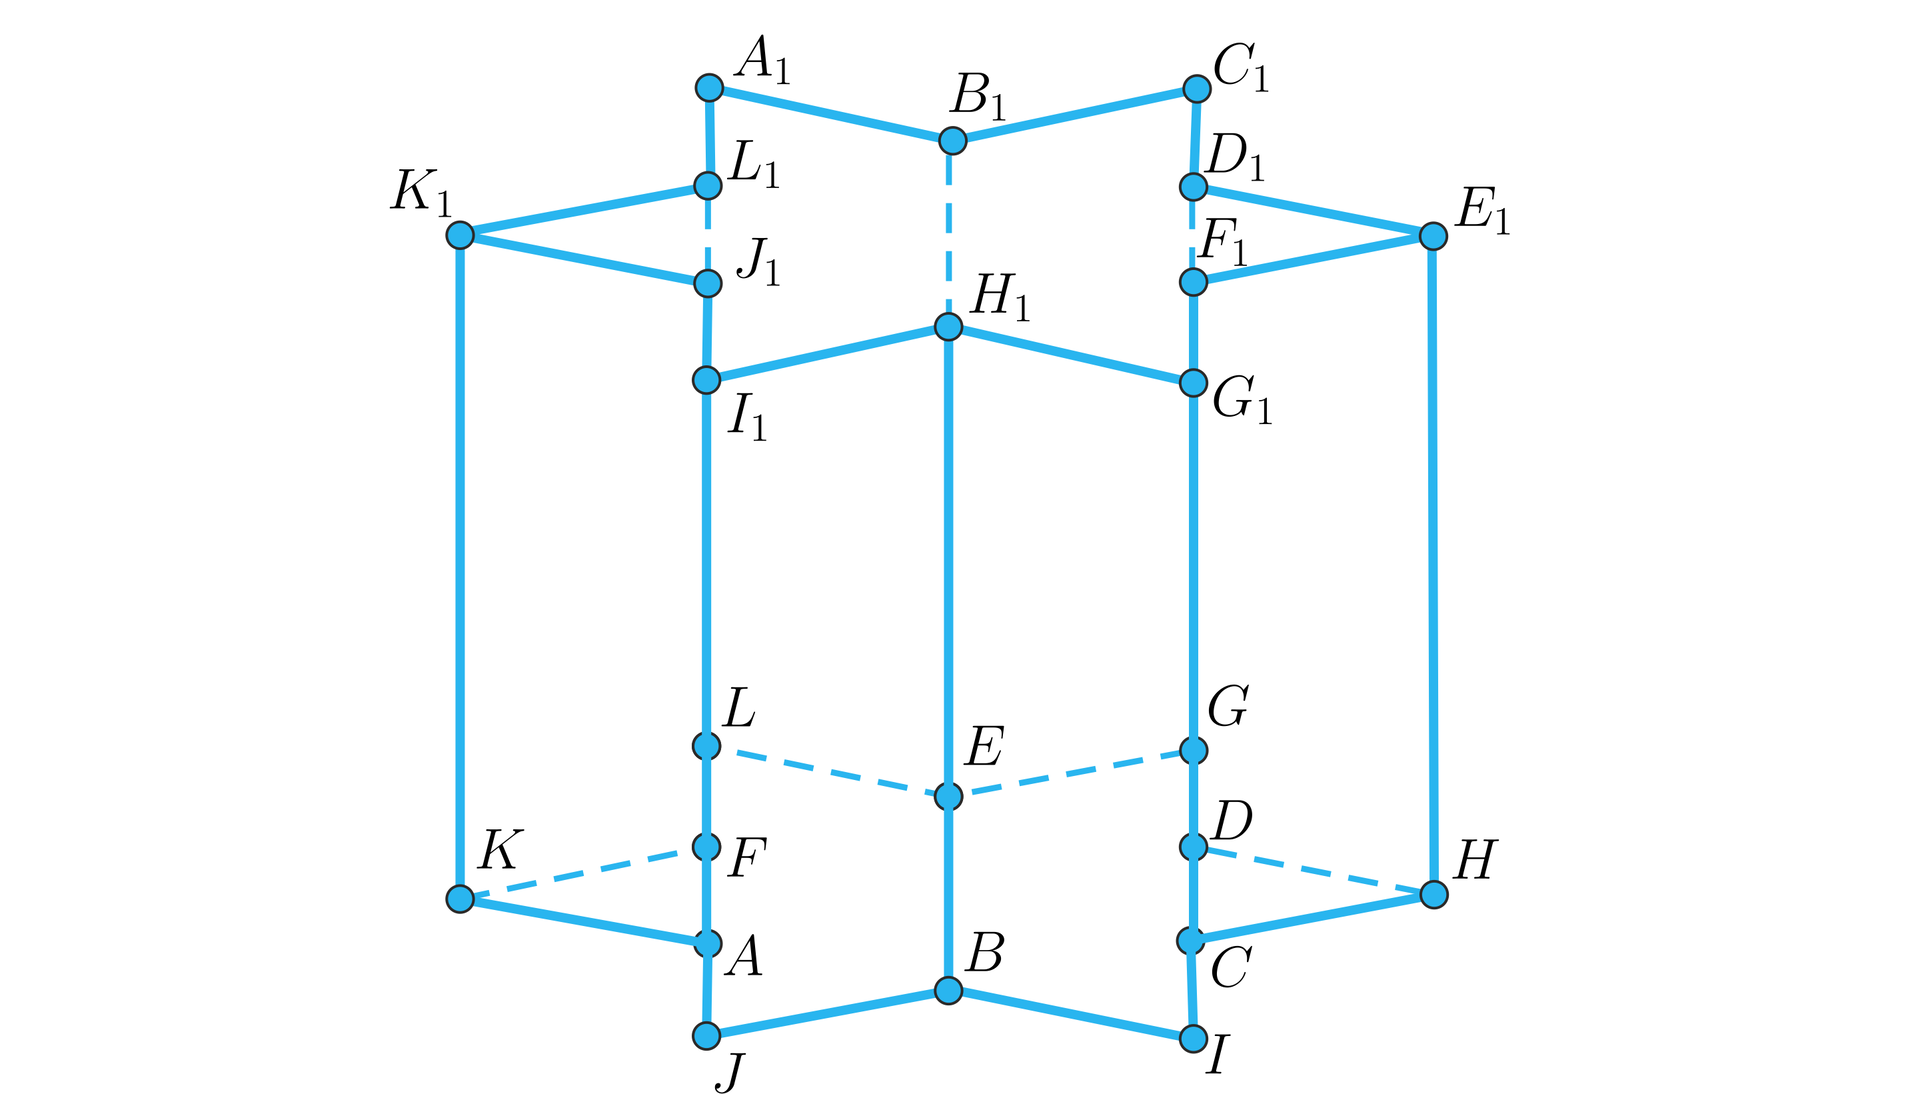 Ilustracja przedstawia graniastosłup o podstawach będących foremnymi sześcioramiennymi gwiazdami i o pionowych prostokątnych ścianach. Wierzchołki dolnej podstawy to: ABCDEFGHIJKL. Wierzchołki górnej podstawy to: A1B1C1D1E1F1G1H1I1J1K1L1.